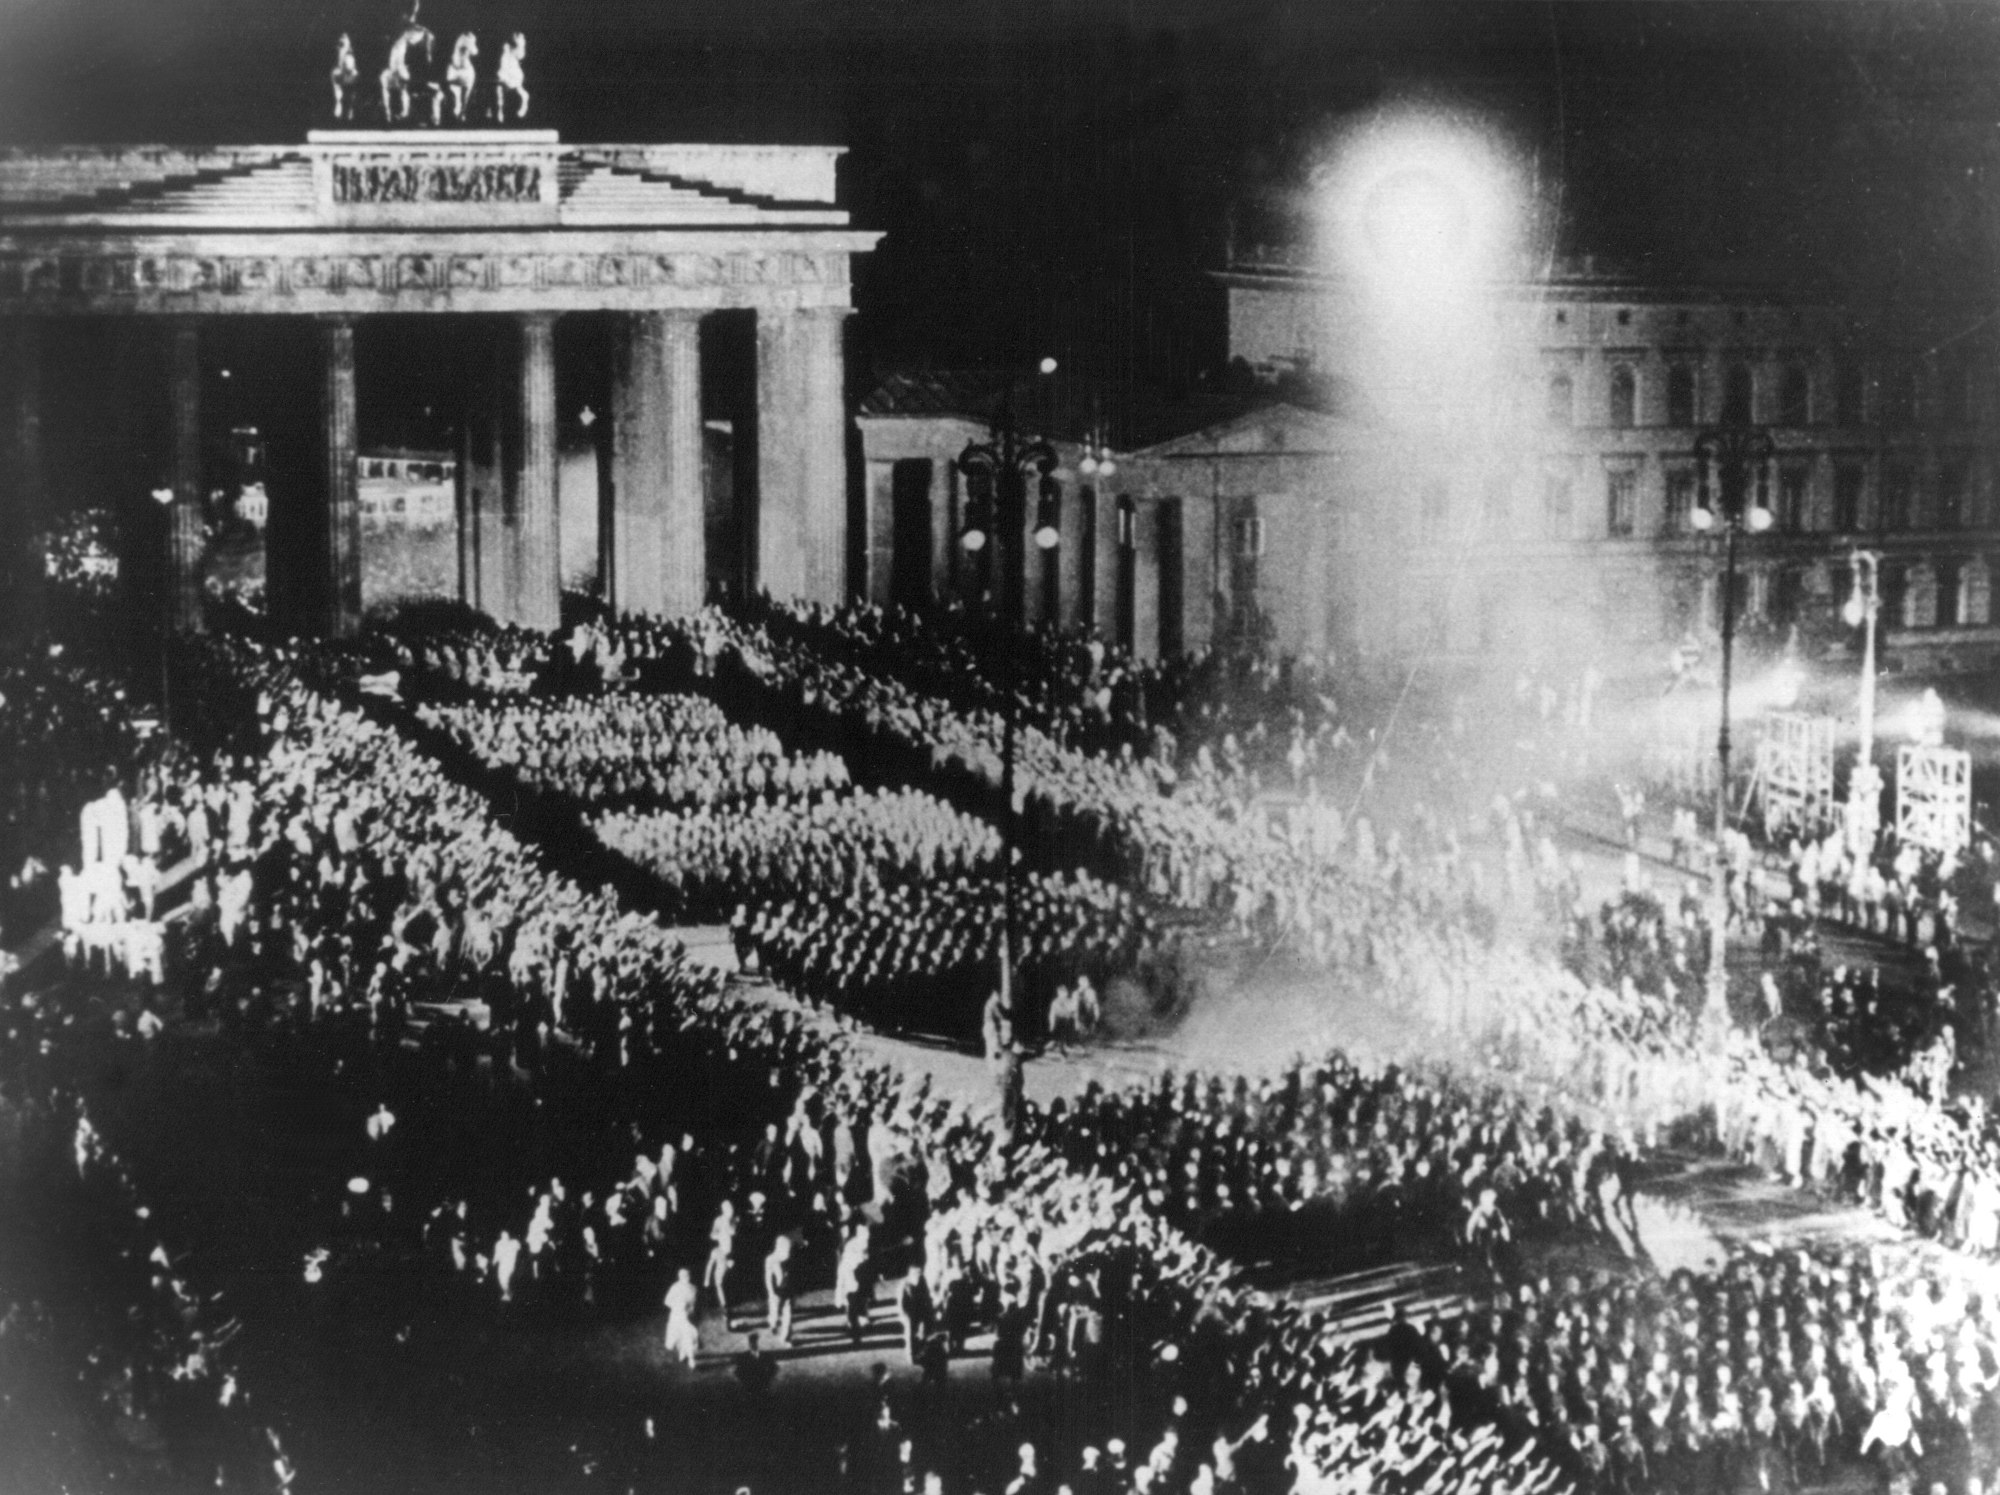 ARCHIV - Für einen NS-Film nachgestellte Szene des Fackelzugs der SA durch das Brandenburger Tor, mit dem die Nationalsozialisten am 30.01.1933 die Machtübernahme feierten (Archivbild vom Sommer 1933). Der Reichspräsident und Generalfeldmarschall Paul von Hindenburg hatte zuvor Adolf Hitler, den Führer der NSDAP, zum Reichskanzler ernannt. Foto: dpa (zu dpa-Themenpaket 75 Jahre NS-Machtübernahme) +++ dpa-Bildfunk +++